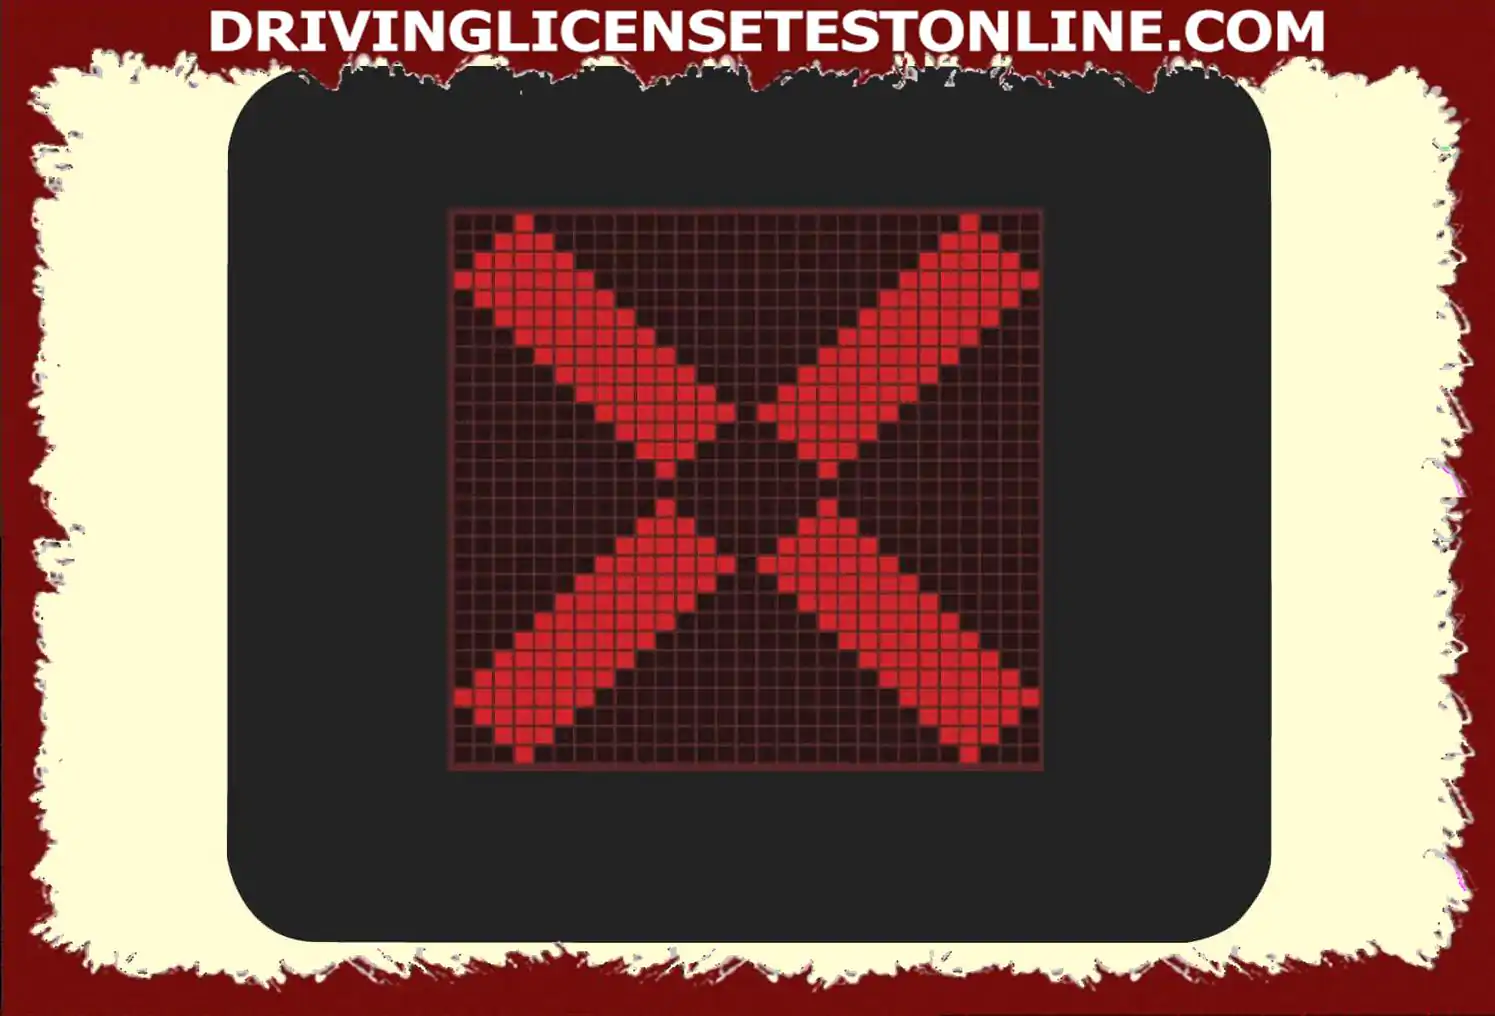 Du är på en motorväg . Vad betyder det när ett rött kors visas ovanför den hårda axeln ??